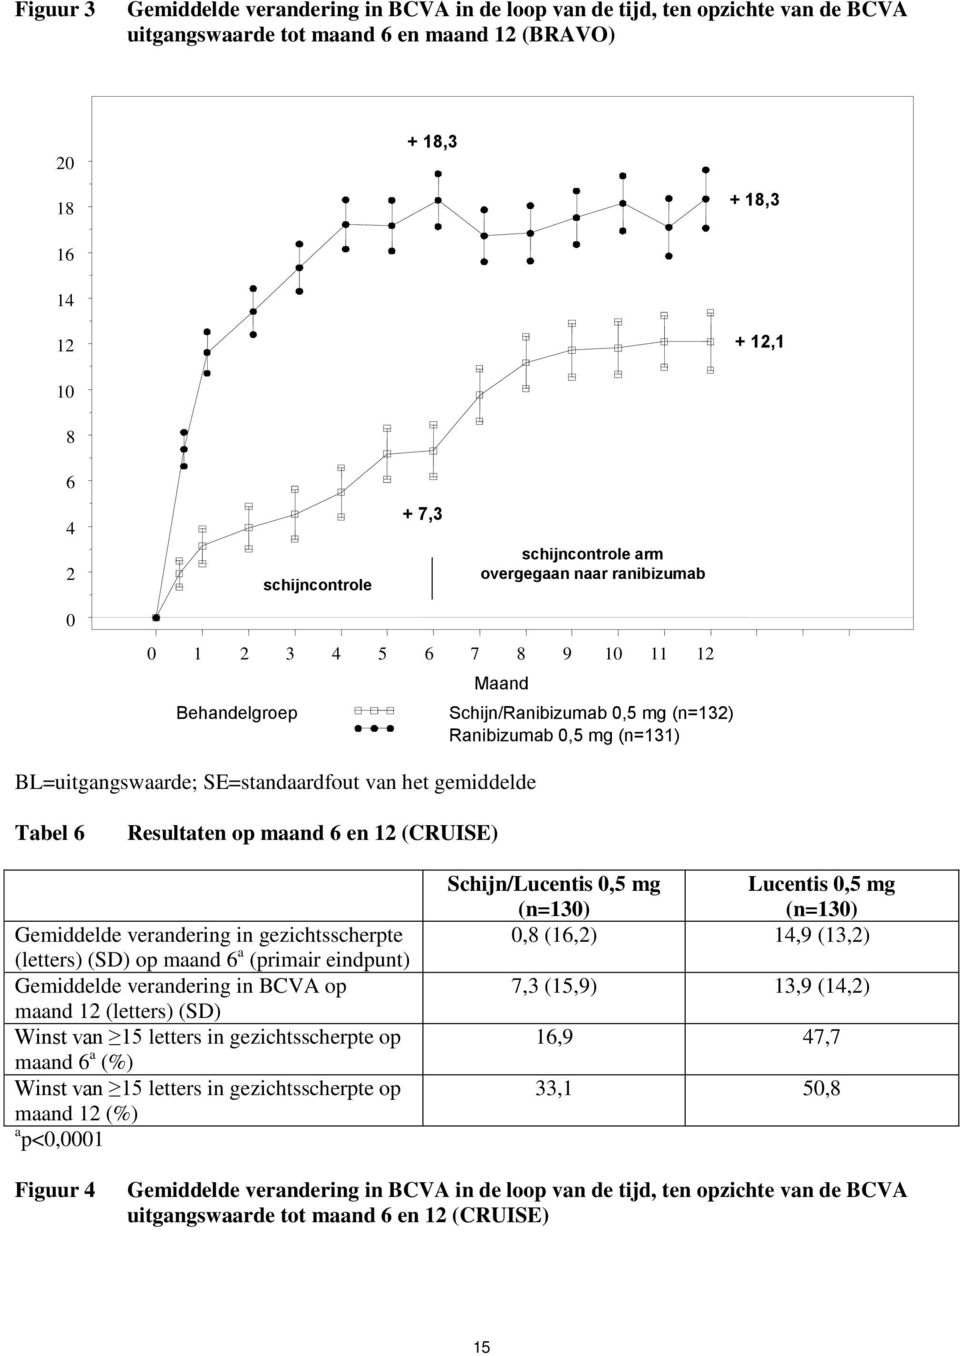 Ranibizumab 0,5 mg (n=131) Tabel 6 Resultaten op maand 6 en 12 (CRUISE) Gemiddelde verandering in gezichtsscherpte (letters) (SD) op maand 6 a (primair eindpunt) Gemiddelde verandering in BCVA op